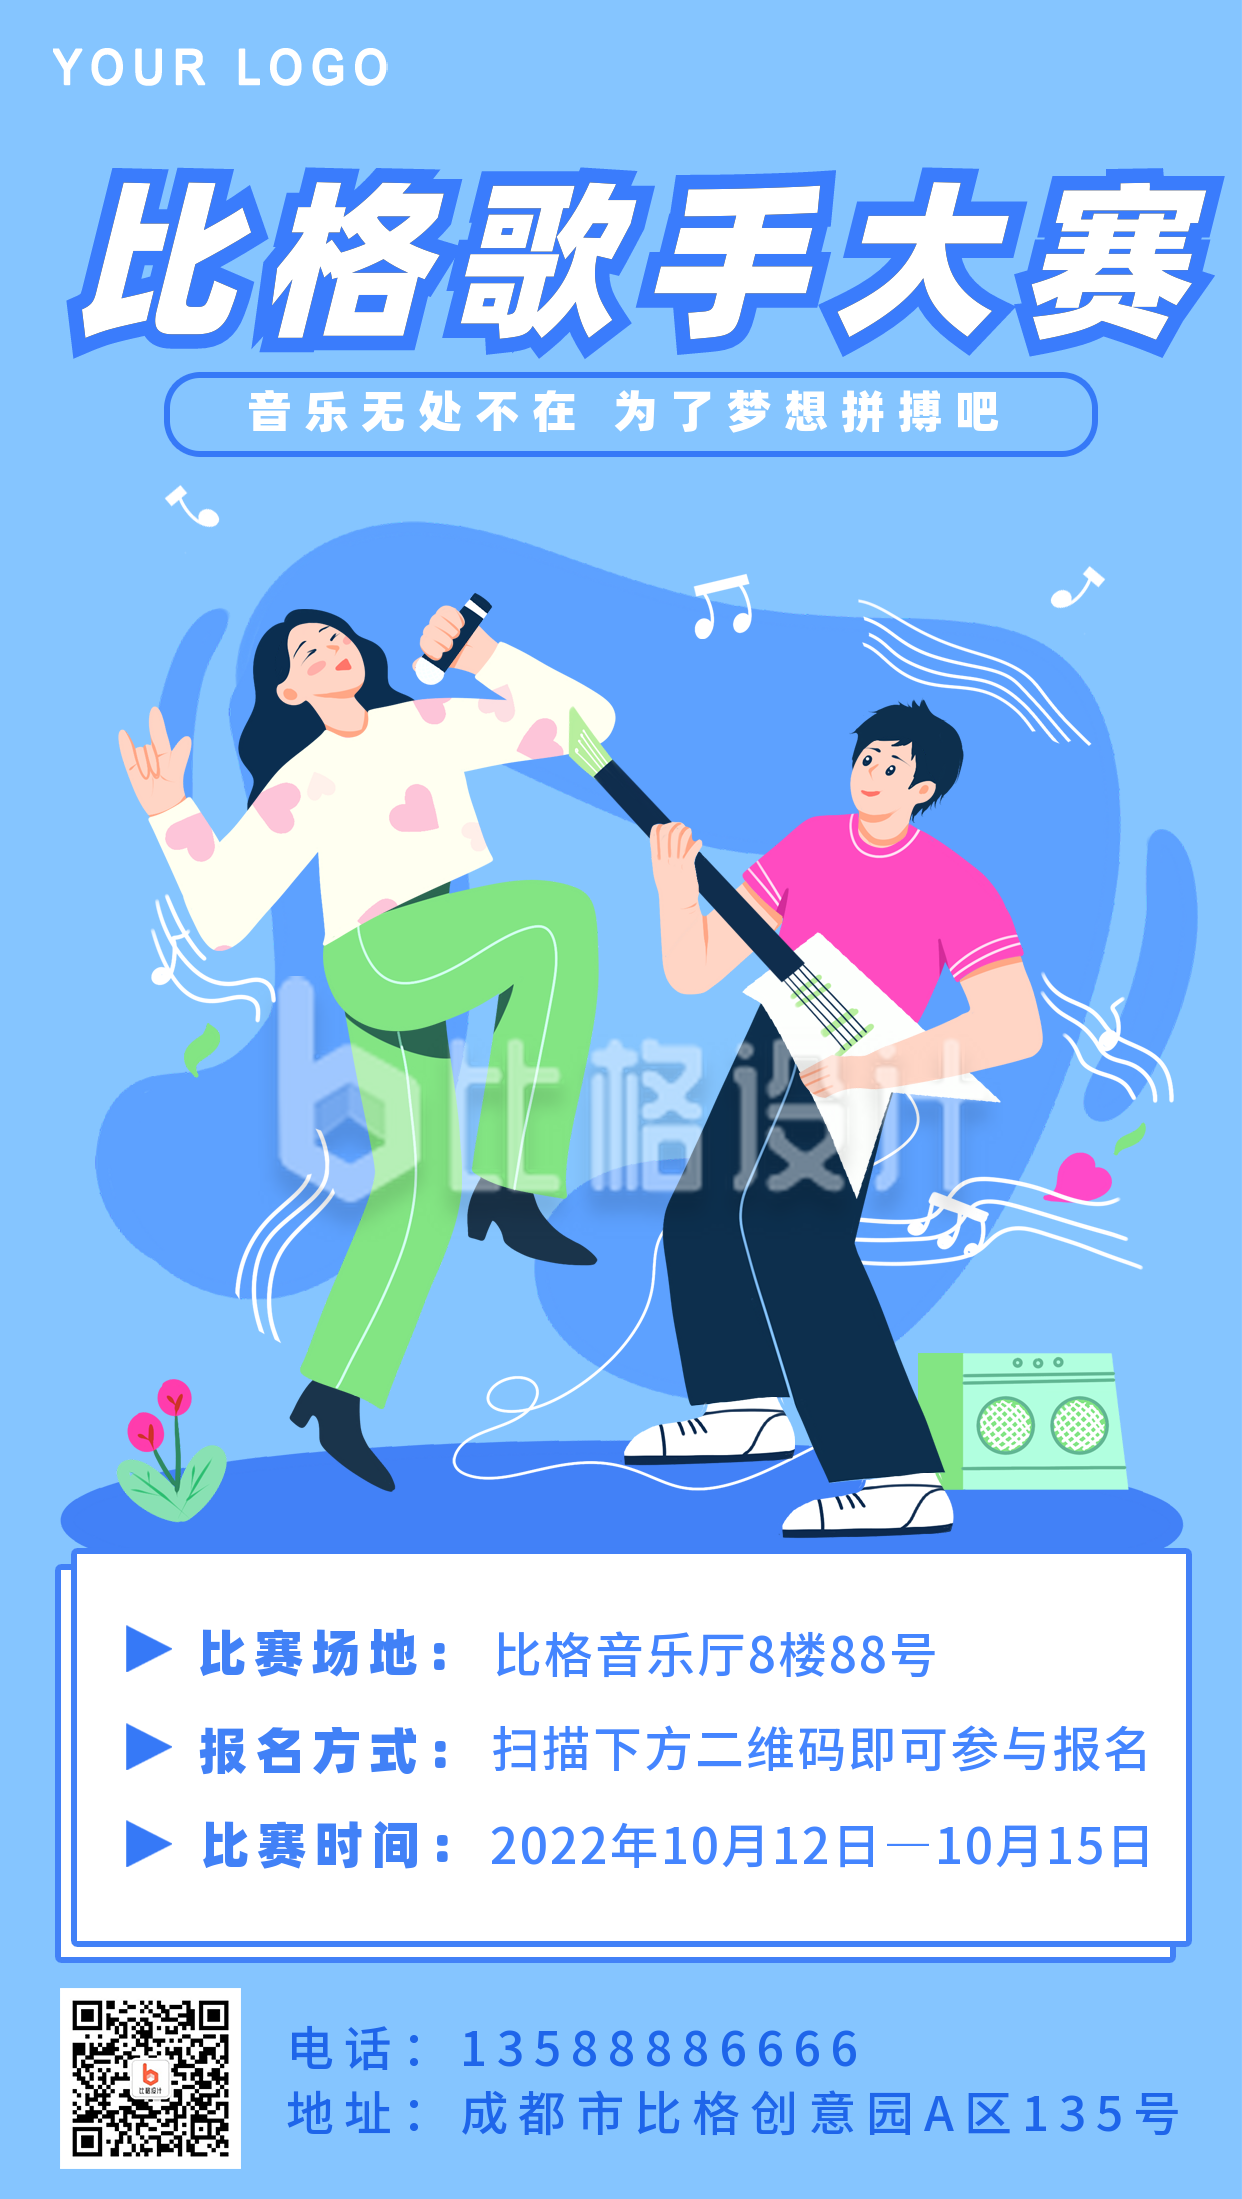 橙紫色大学生校园歌手大赛手绘校园宣传中文海报 - 模板 - Canva可画